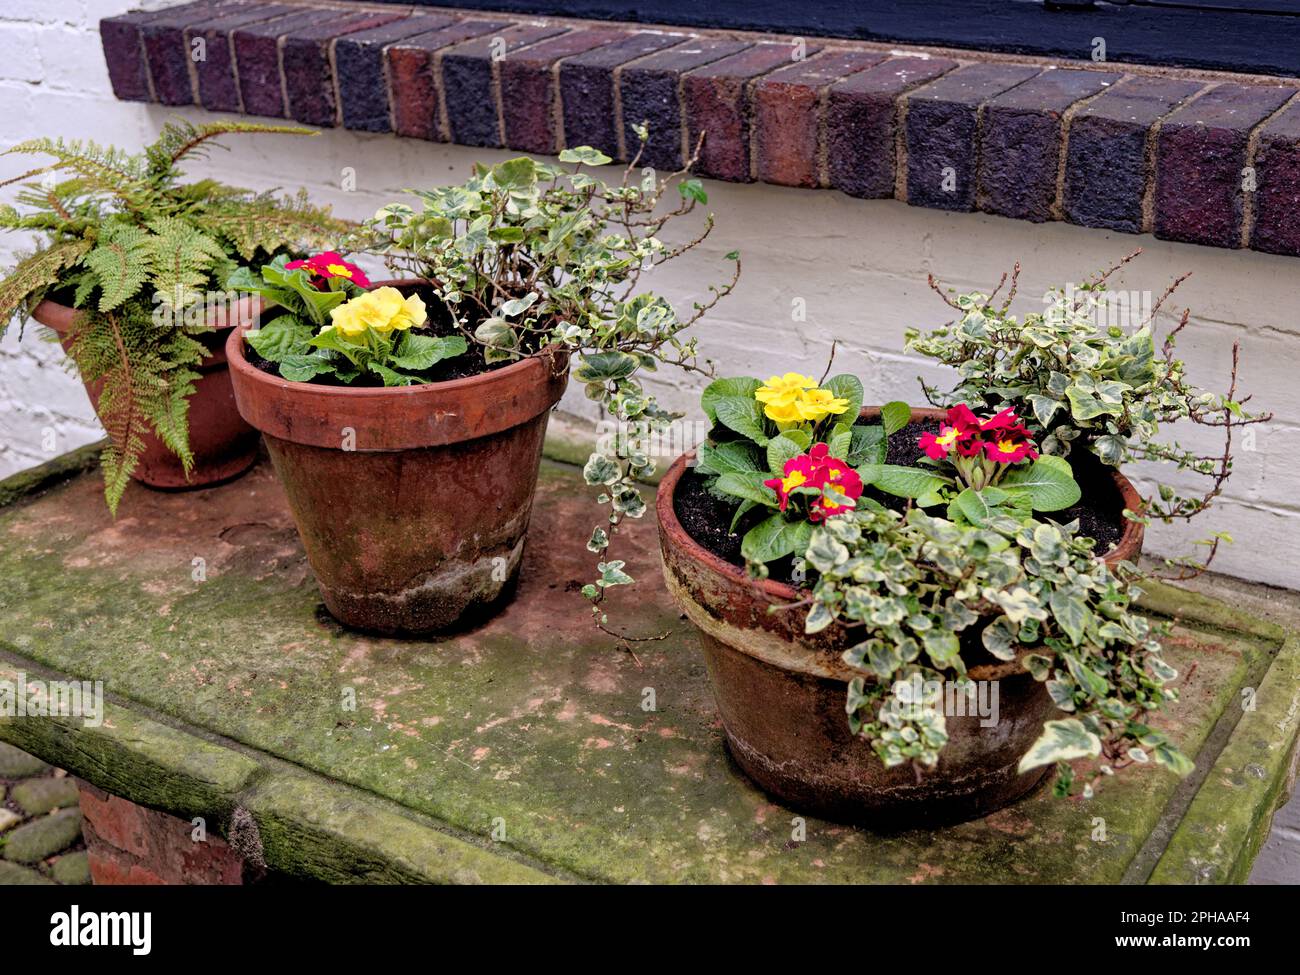 Rustic garden pot in rural village - garden ideas and small garden design Stock Photo